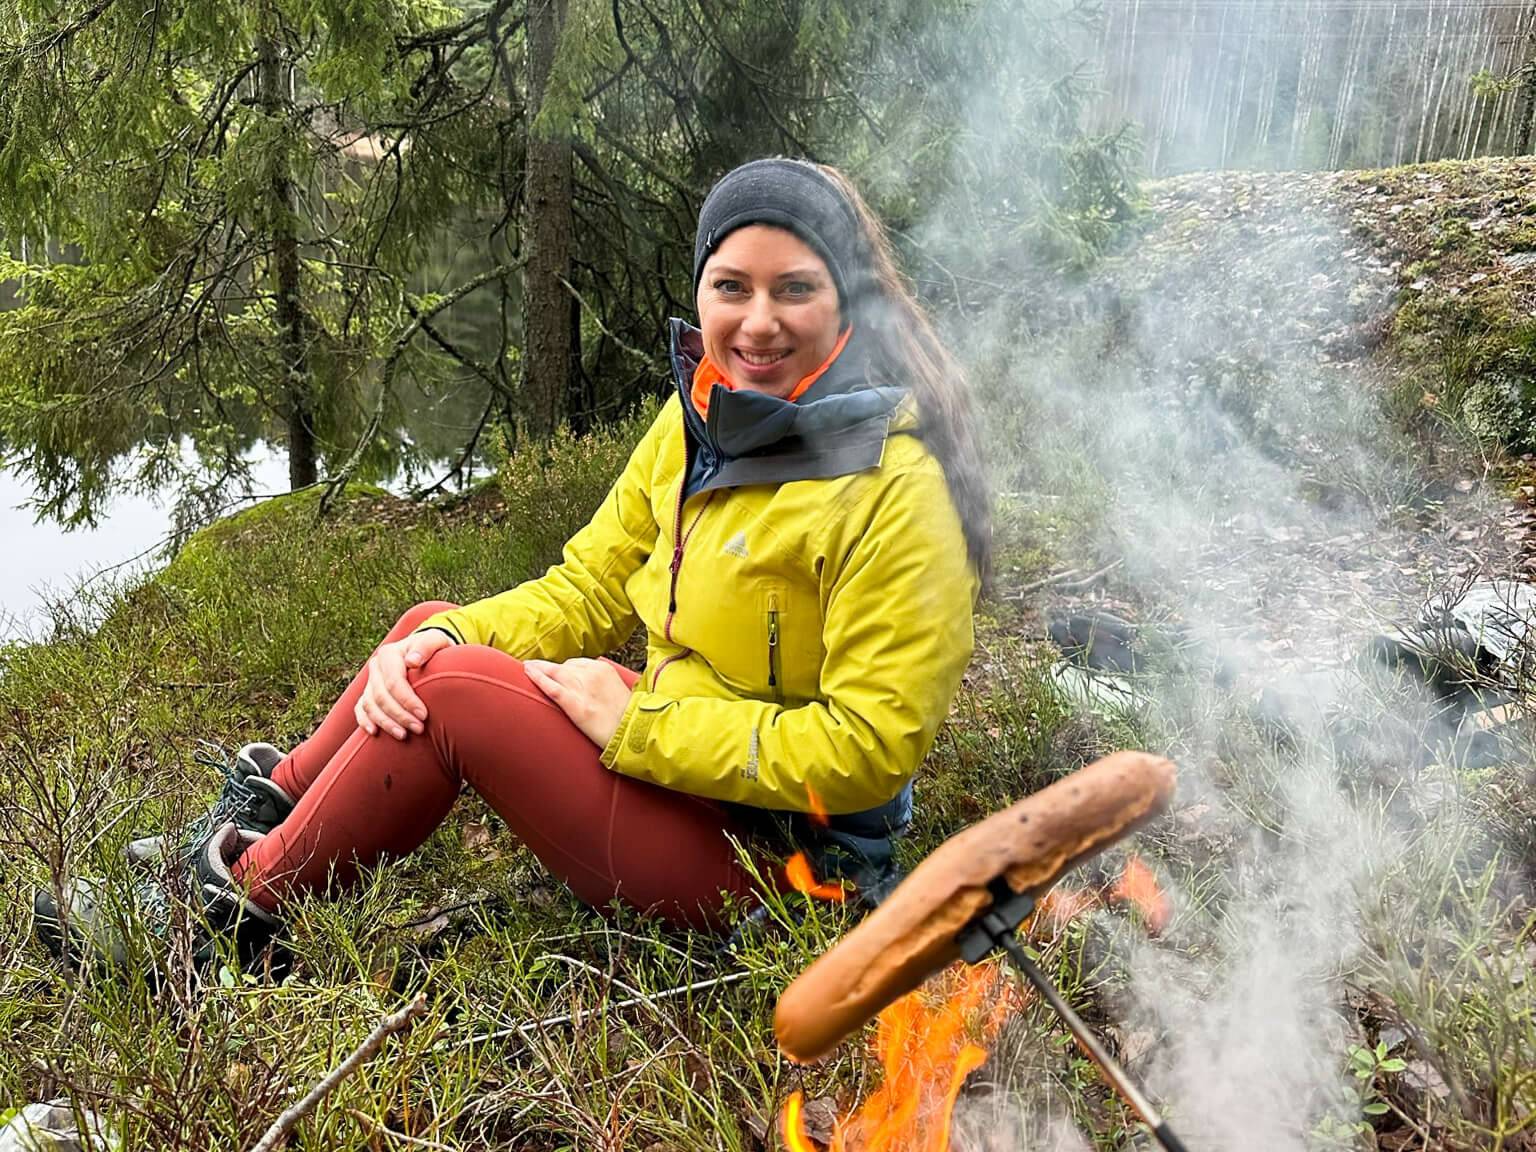 Bloggerin Biggi mit einer Bratwurst am Lagerfeuer im Wald von Oslo.